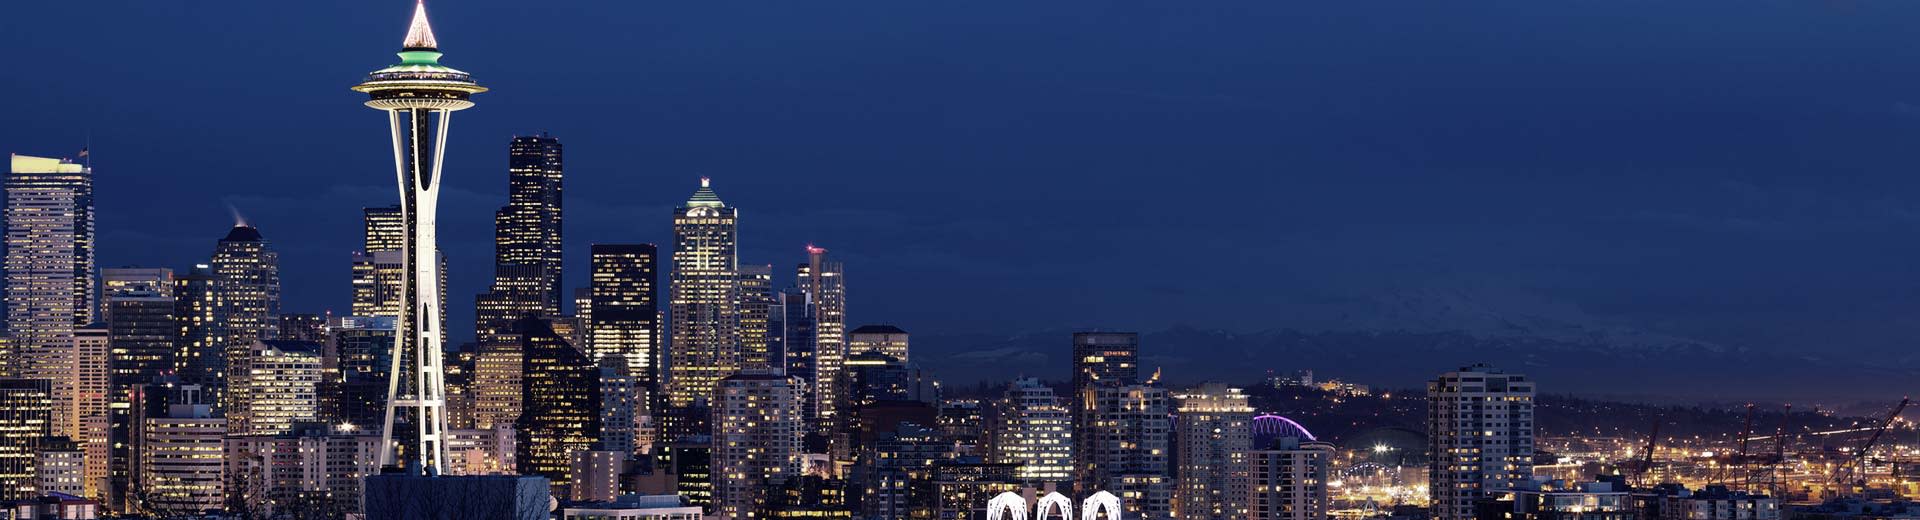 Die berühmte Weltraumnadel von Seattle taucht in die Nacht in den Nachschlusskleien auf, umgeben von Wolkenkratzern und Wohngebäuden.